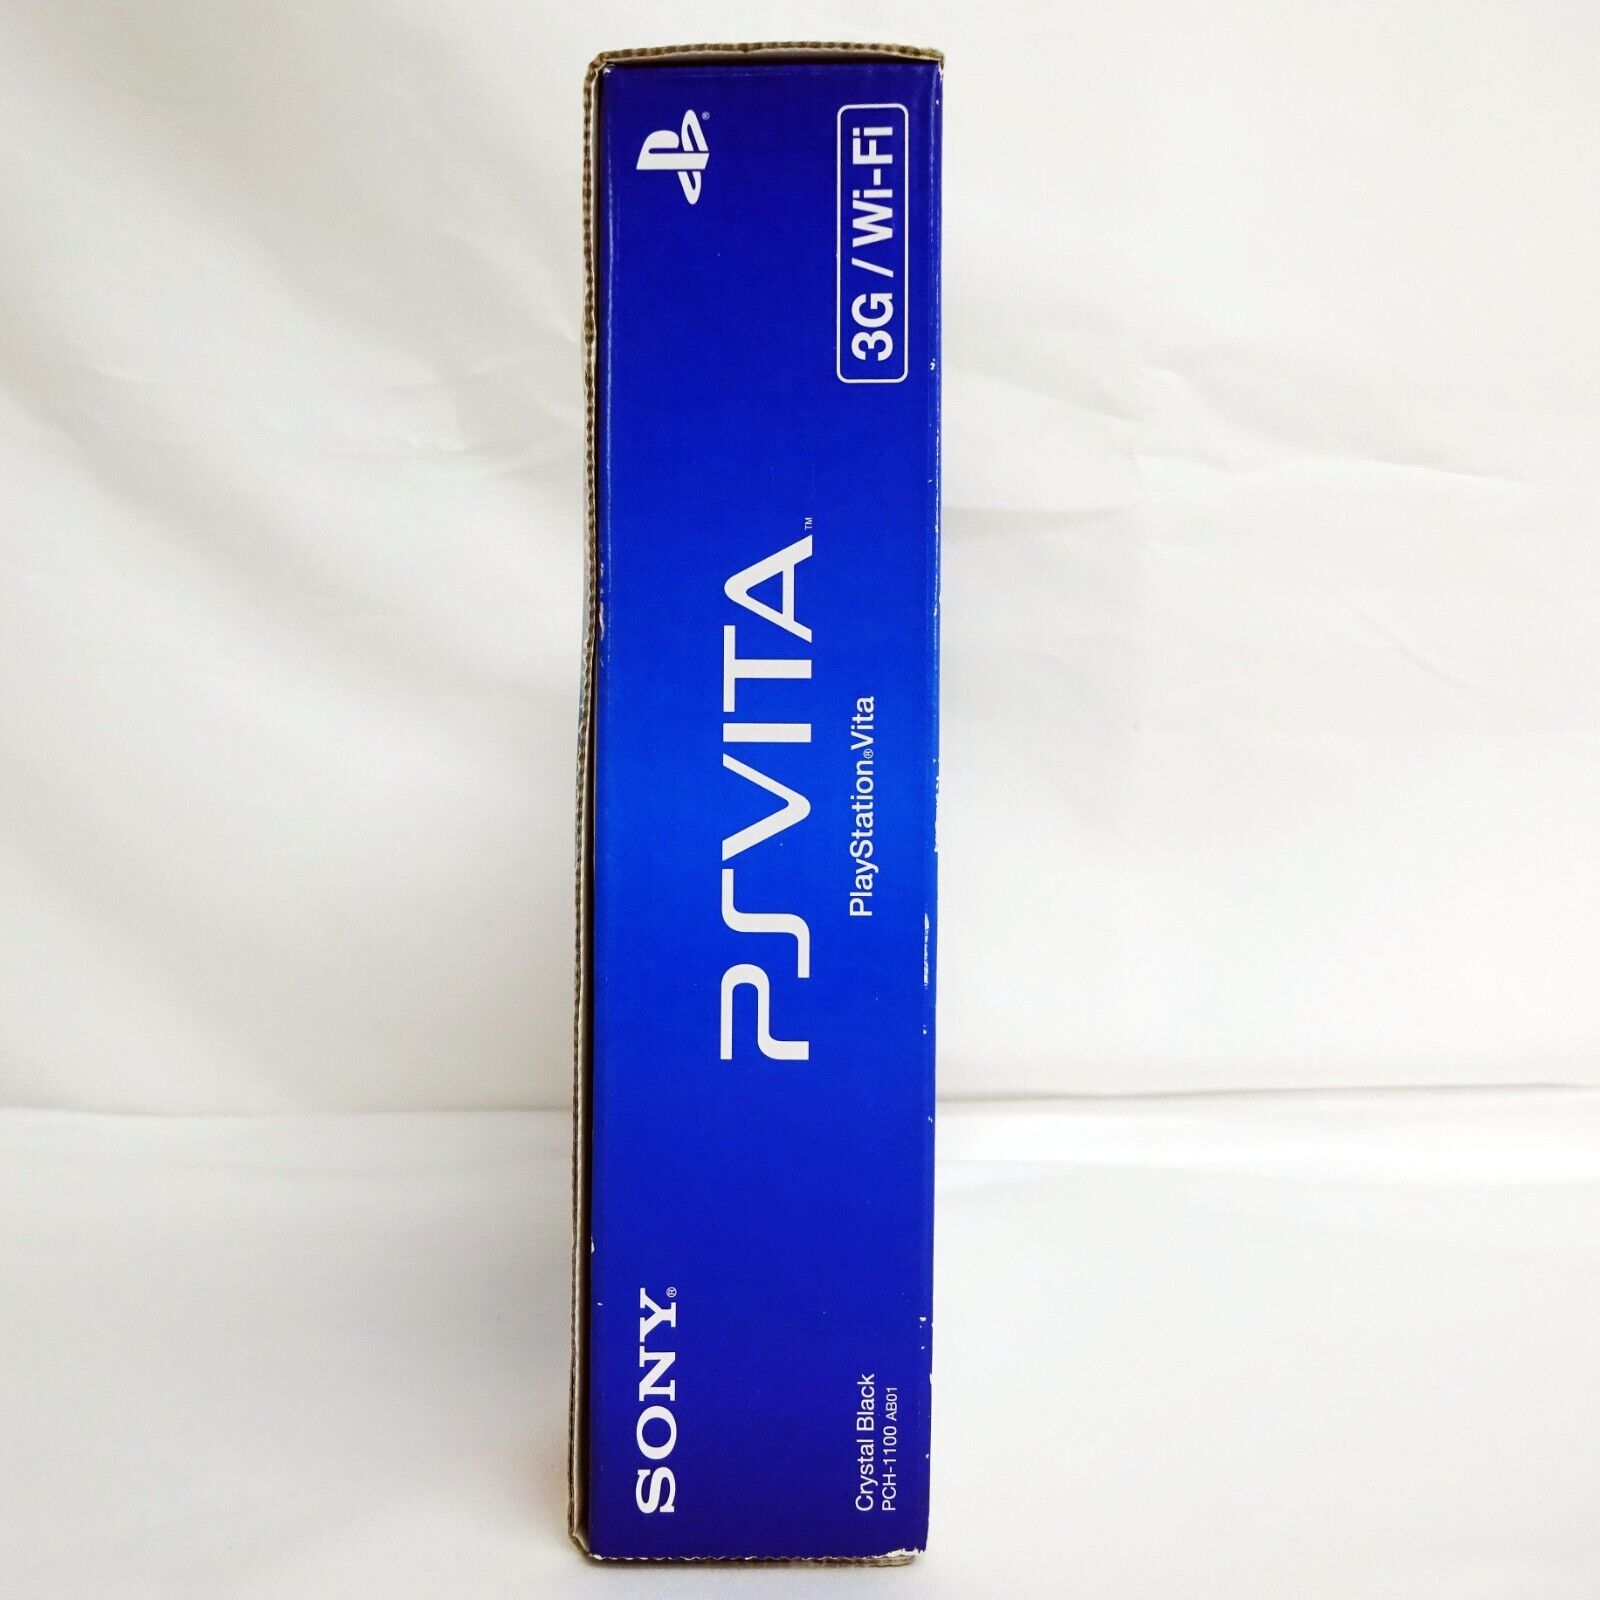 SONY PlayStation Vita 3G / Wi-Fi Model Crystal Black Limited (PCH 